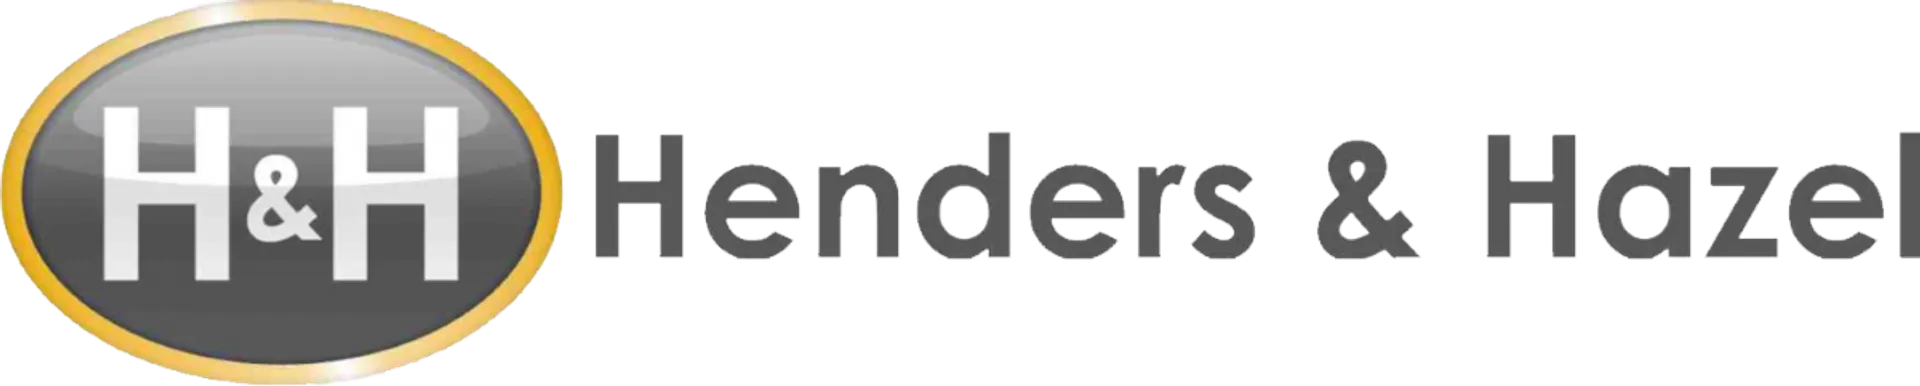 HENDERS & HAZEL logo